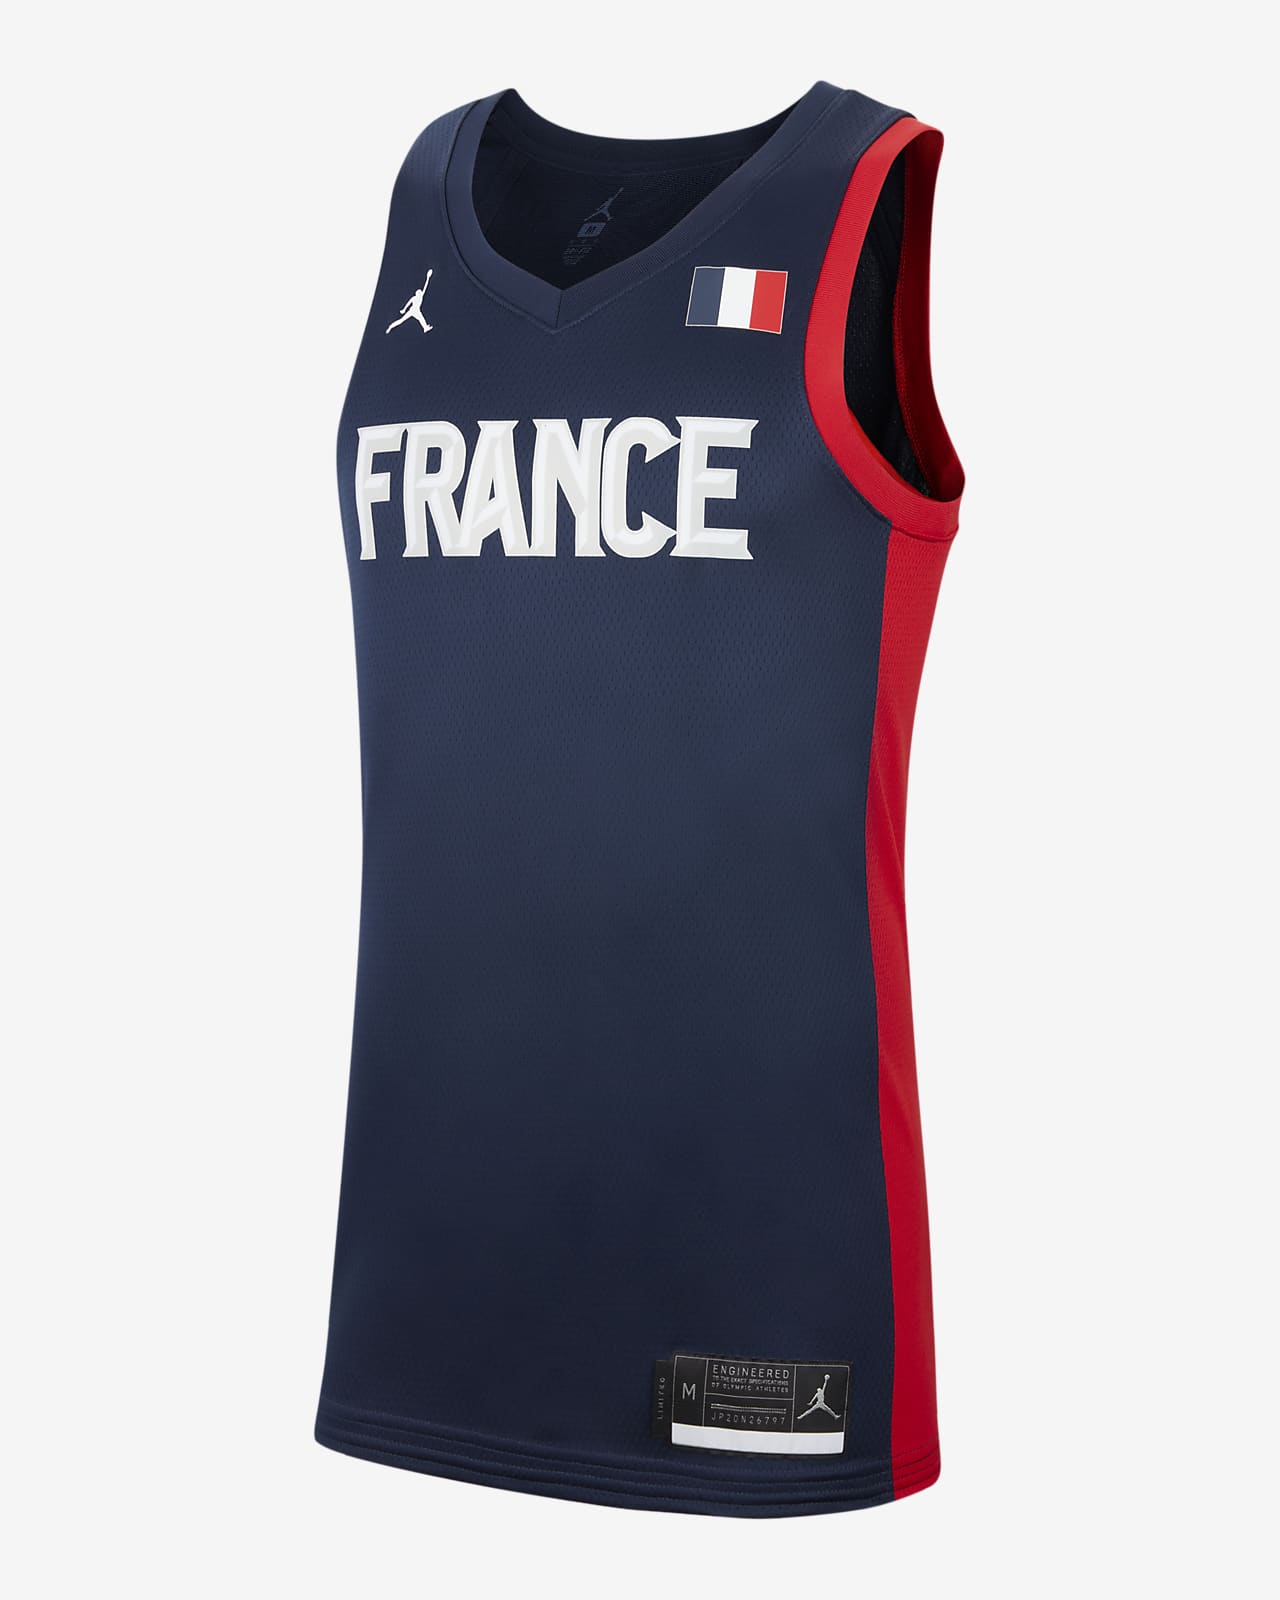 Elendig overskud klistermærke France Jordan (Road) Limited Men's Basketball Jersey. Nike SA